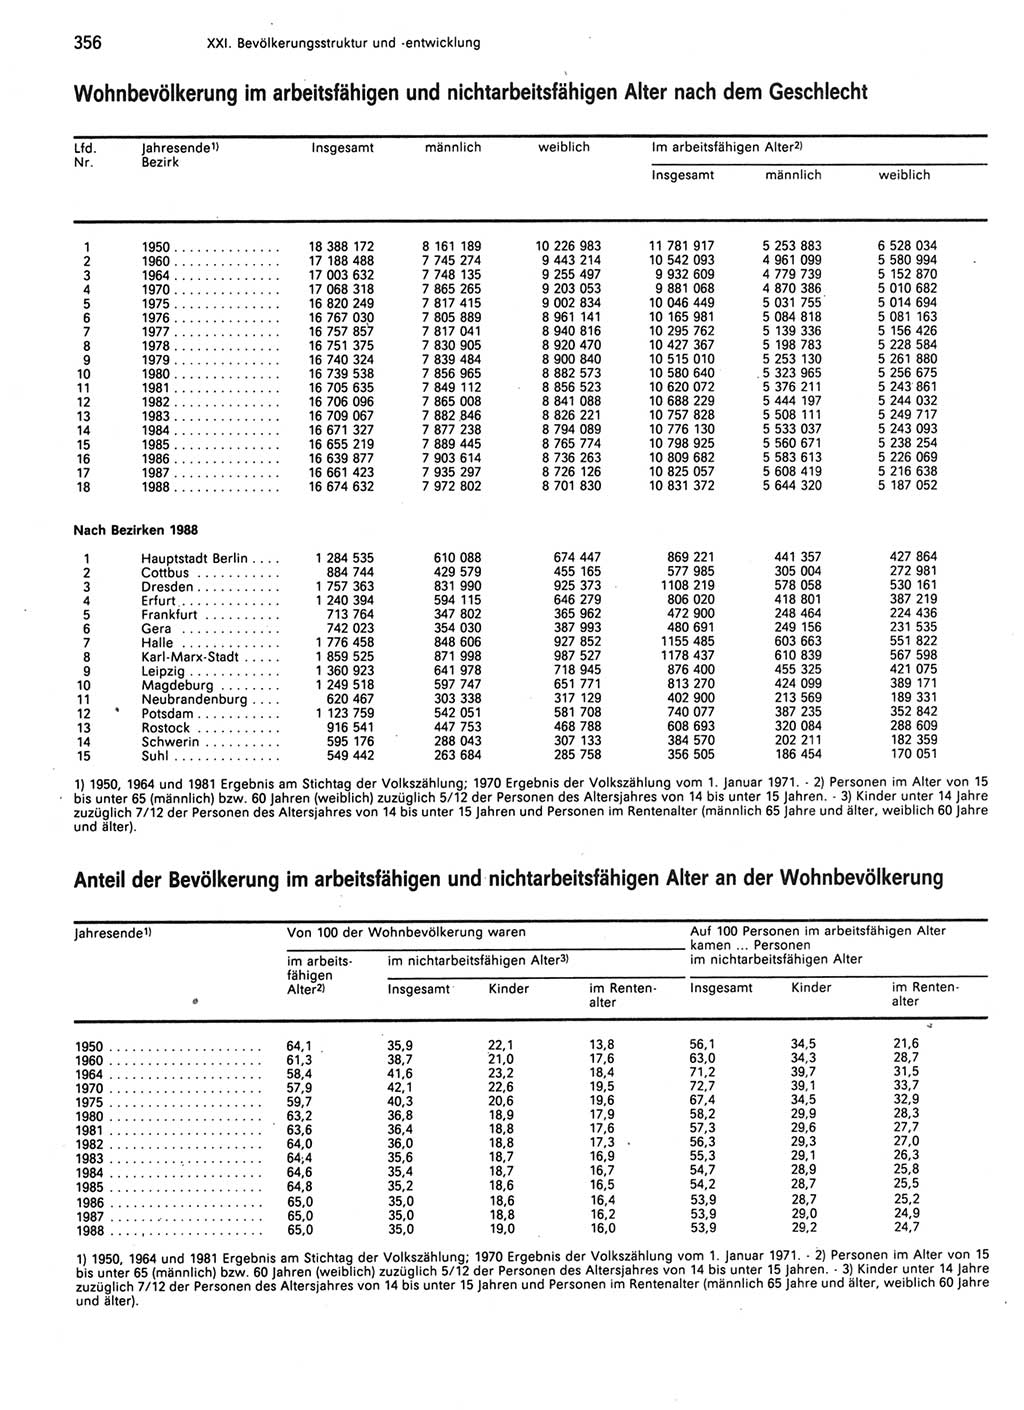 Statistisches Jahrbuch der Deutschen Demokratischen Republik (DDR) 1989, Seite 356 (Stat. Jb. DDR 1989, S. 356)